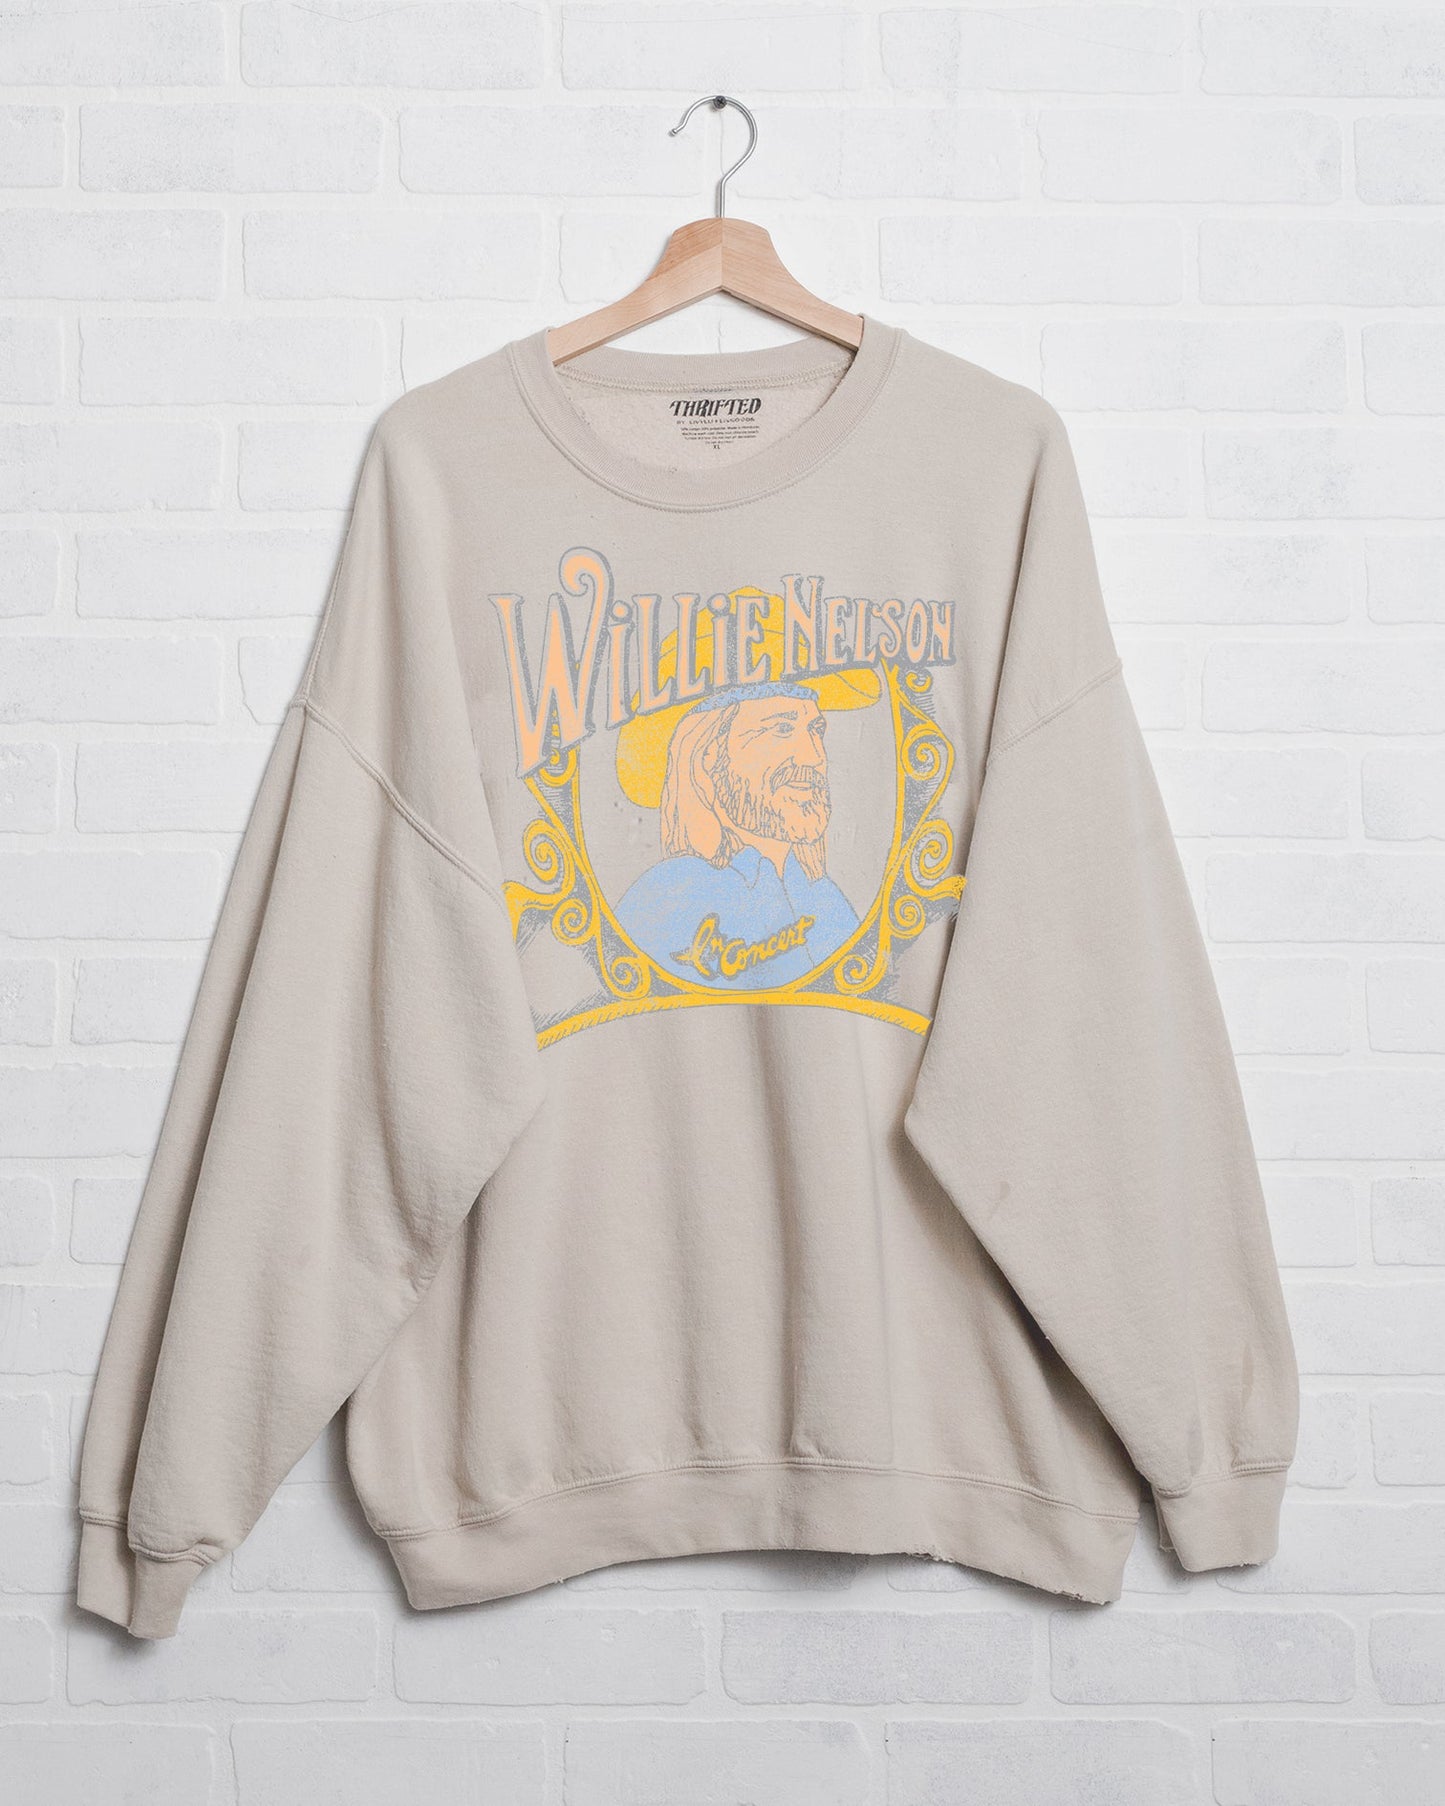 Willie Nelson in Concert Thrifted Sweatshirt - Sand